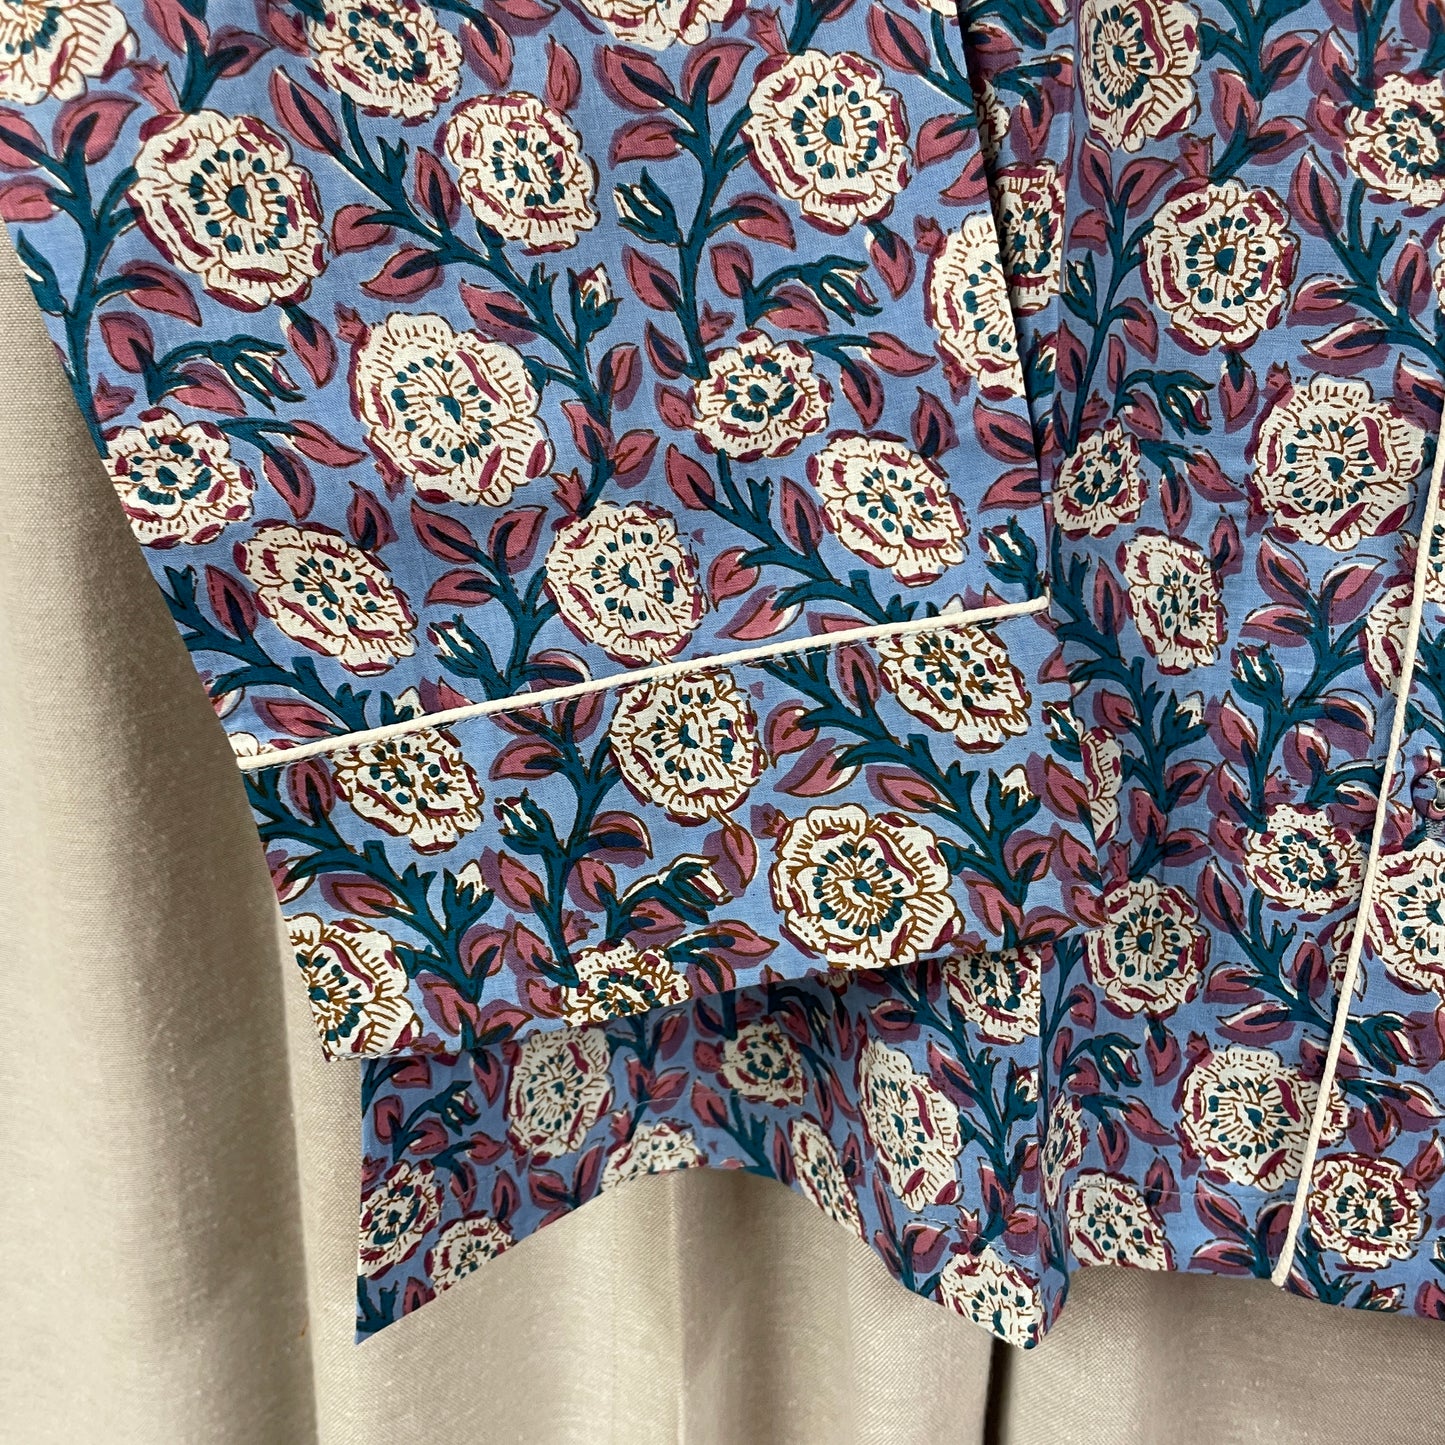 Craft Sisters Pyjamas - Blå/Rosa Mønstret